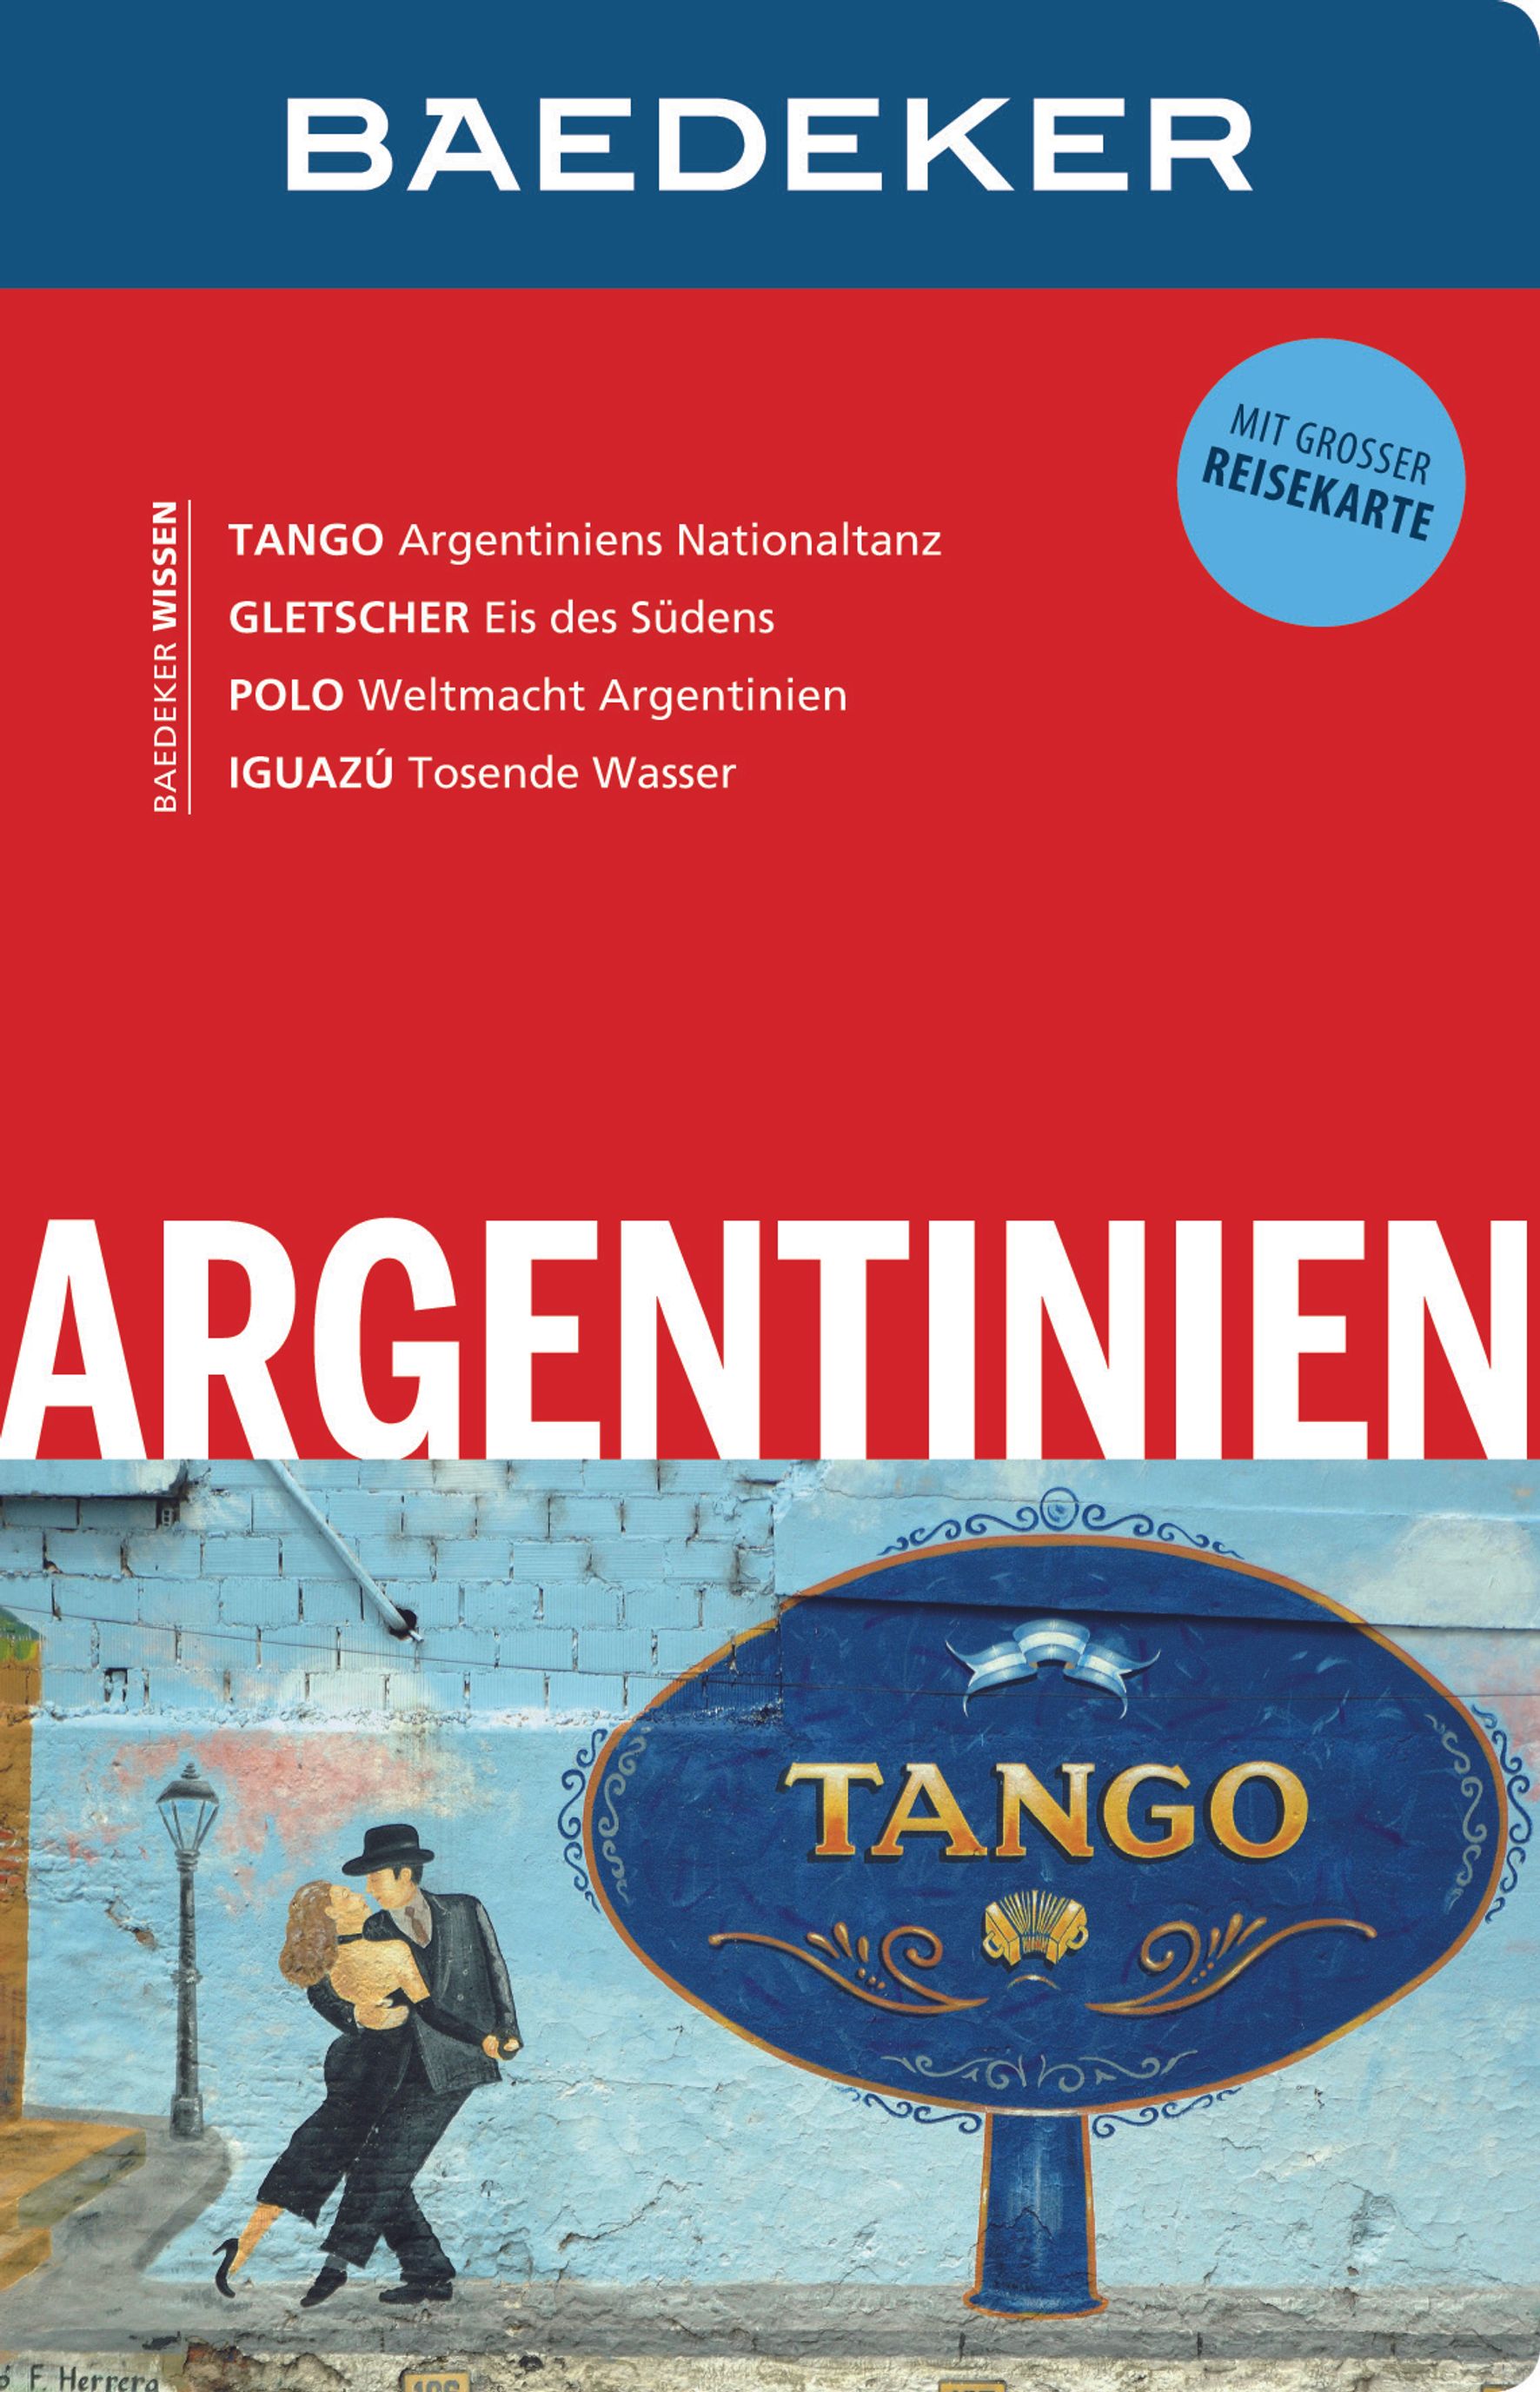 Baedeker Argentinien (eBook)